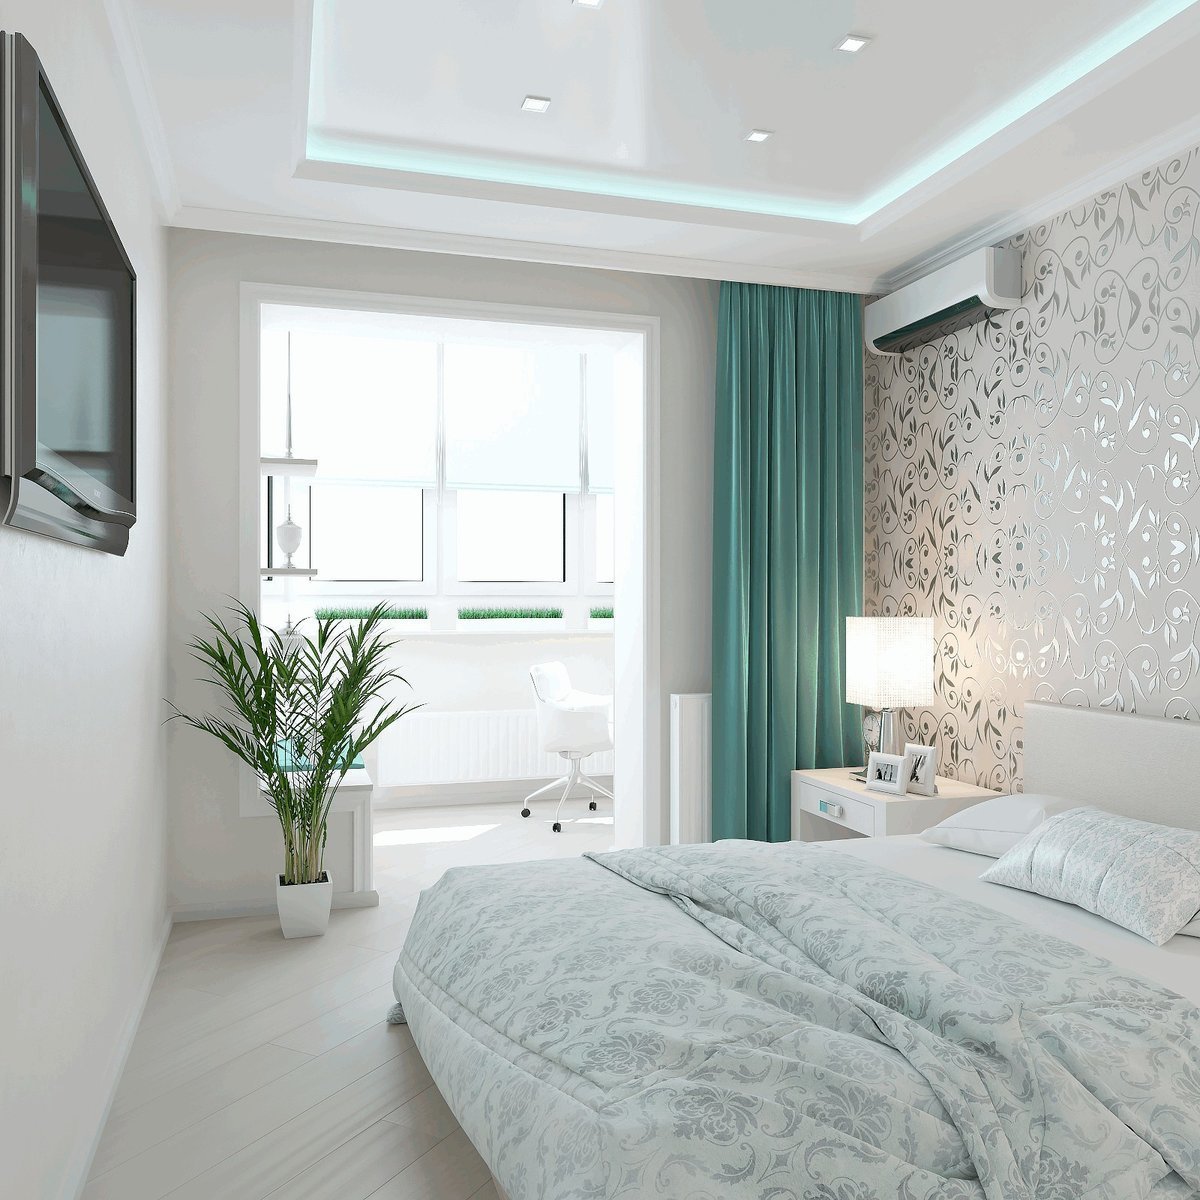 Как оформить дизайн интерьера спальни